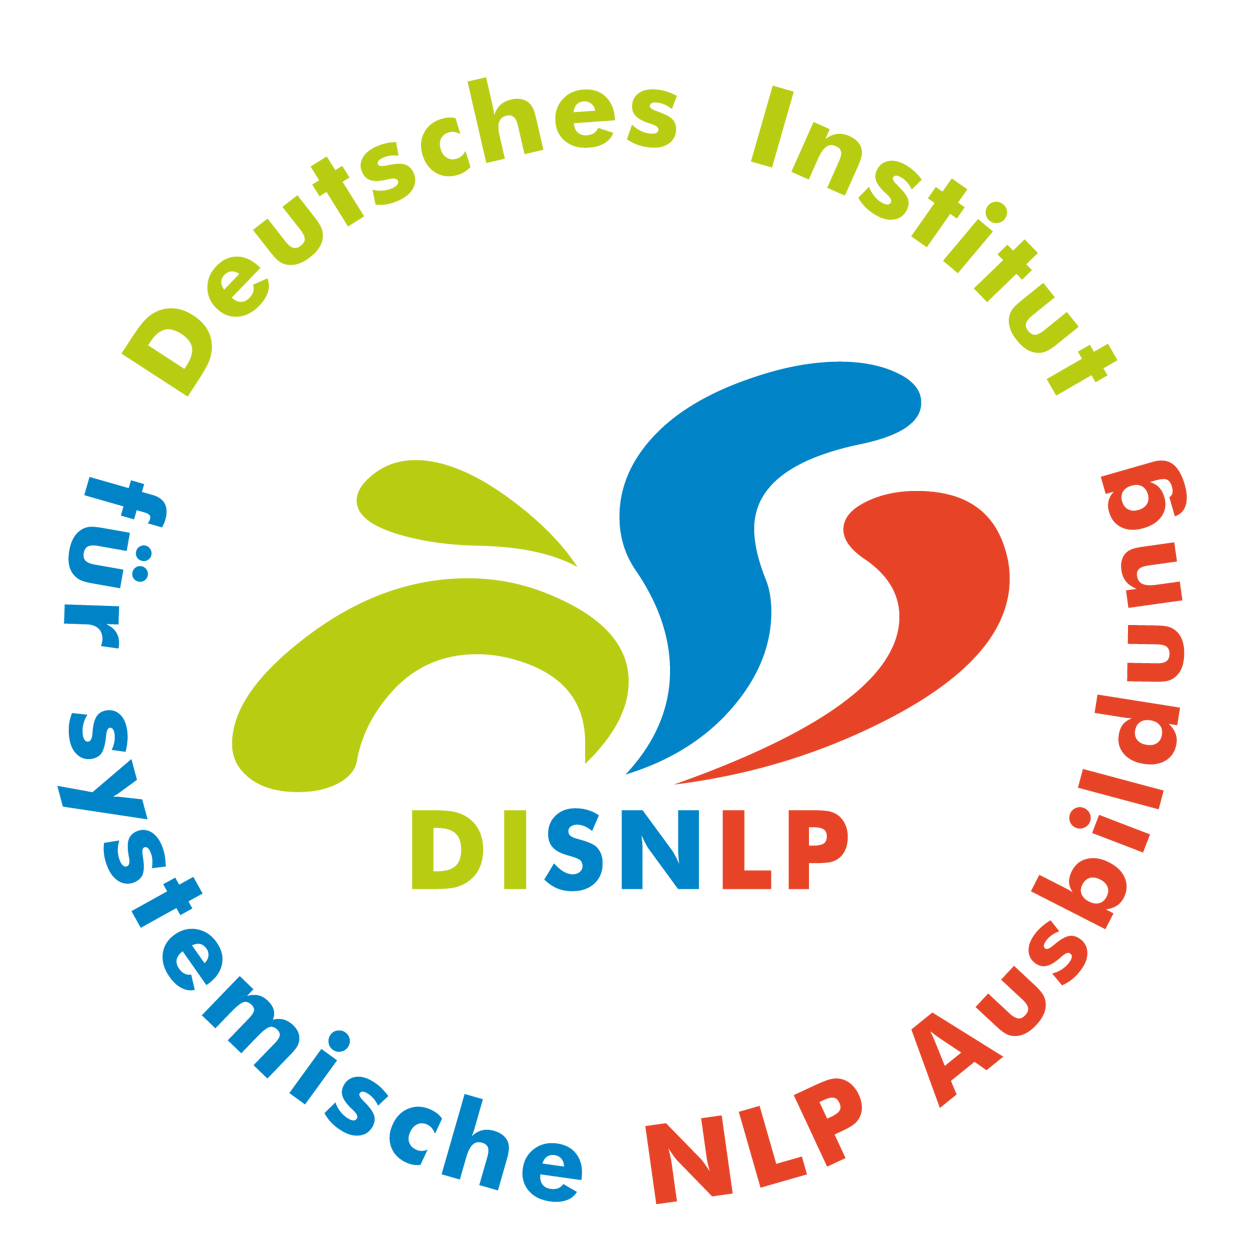 Seminar Selbstbewusstsein, Selbstvertrauen, Selbstwert, Selbstsicherheit stärken Aschaffenburg Bayern mit NLP Coaching Kurs für mehr Selbstbewusstsein